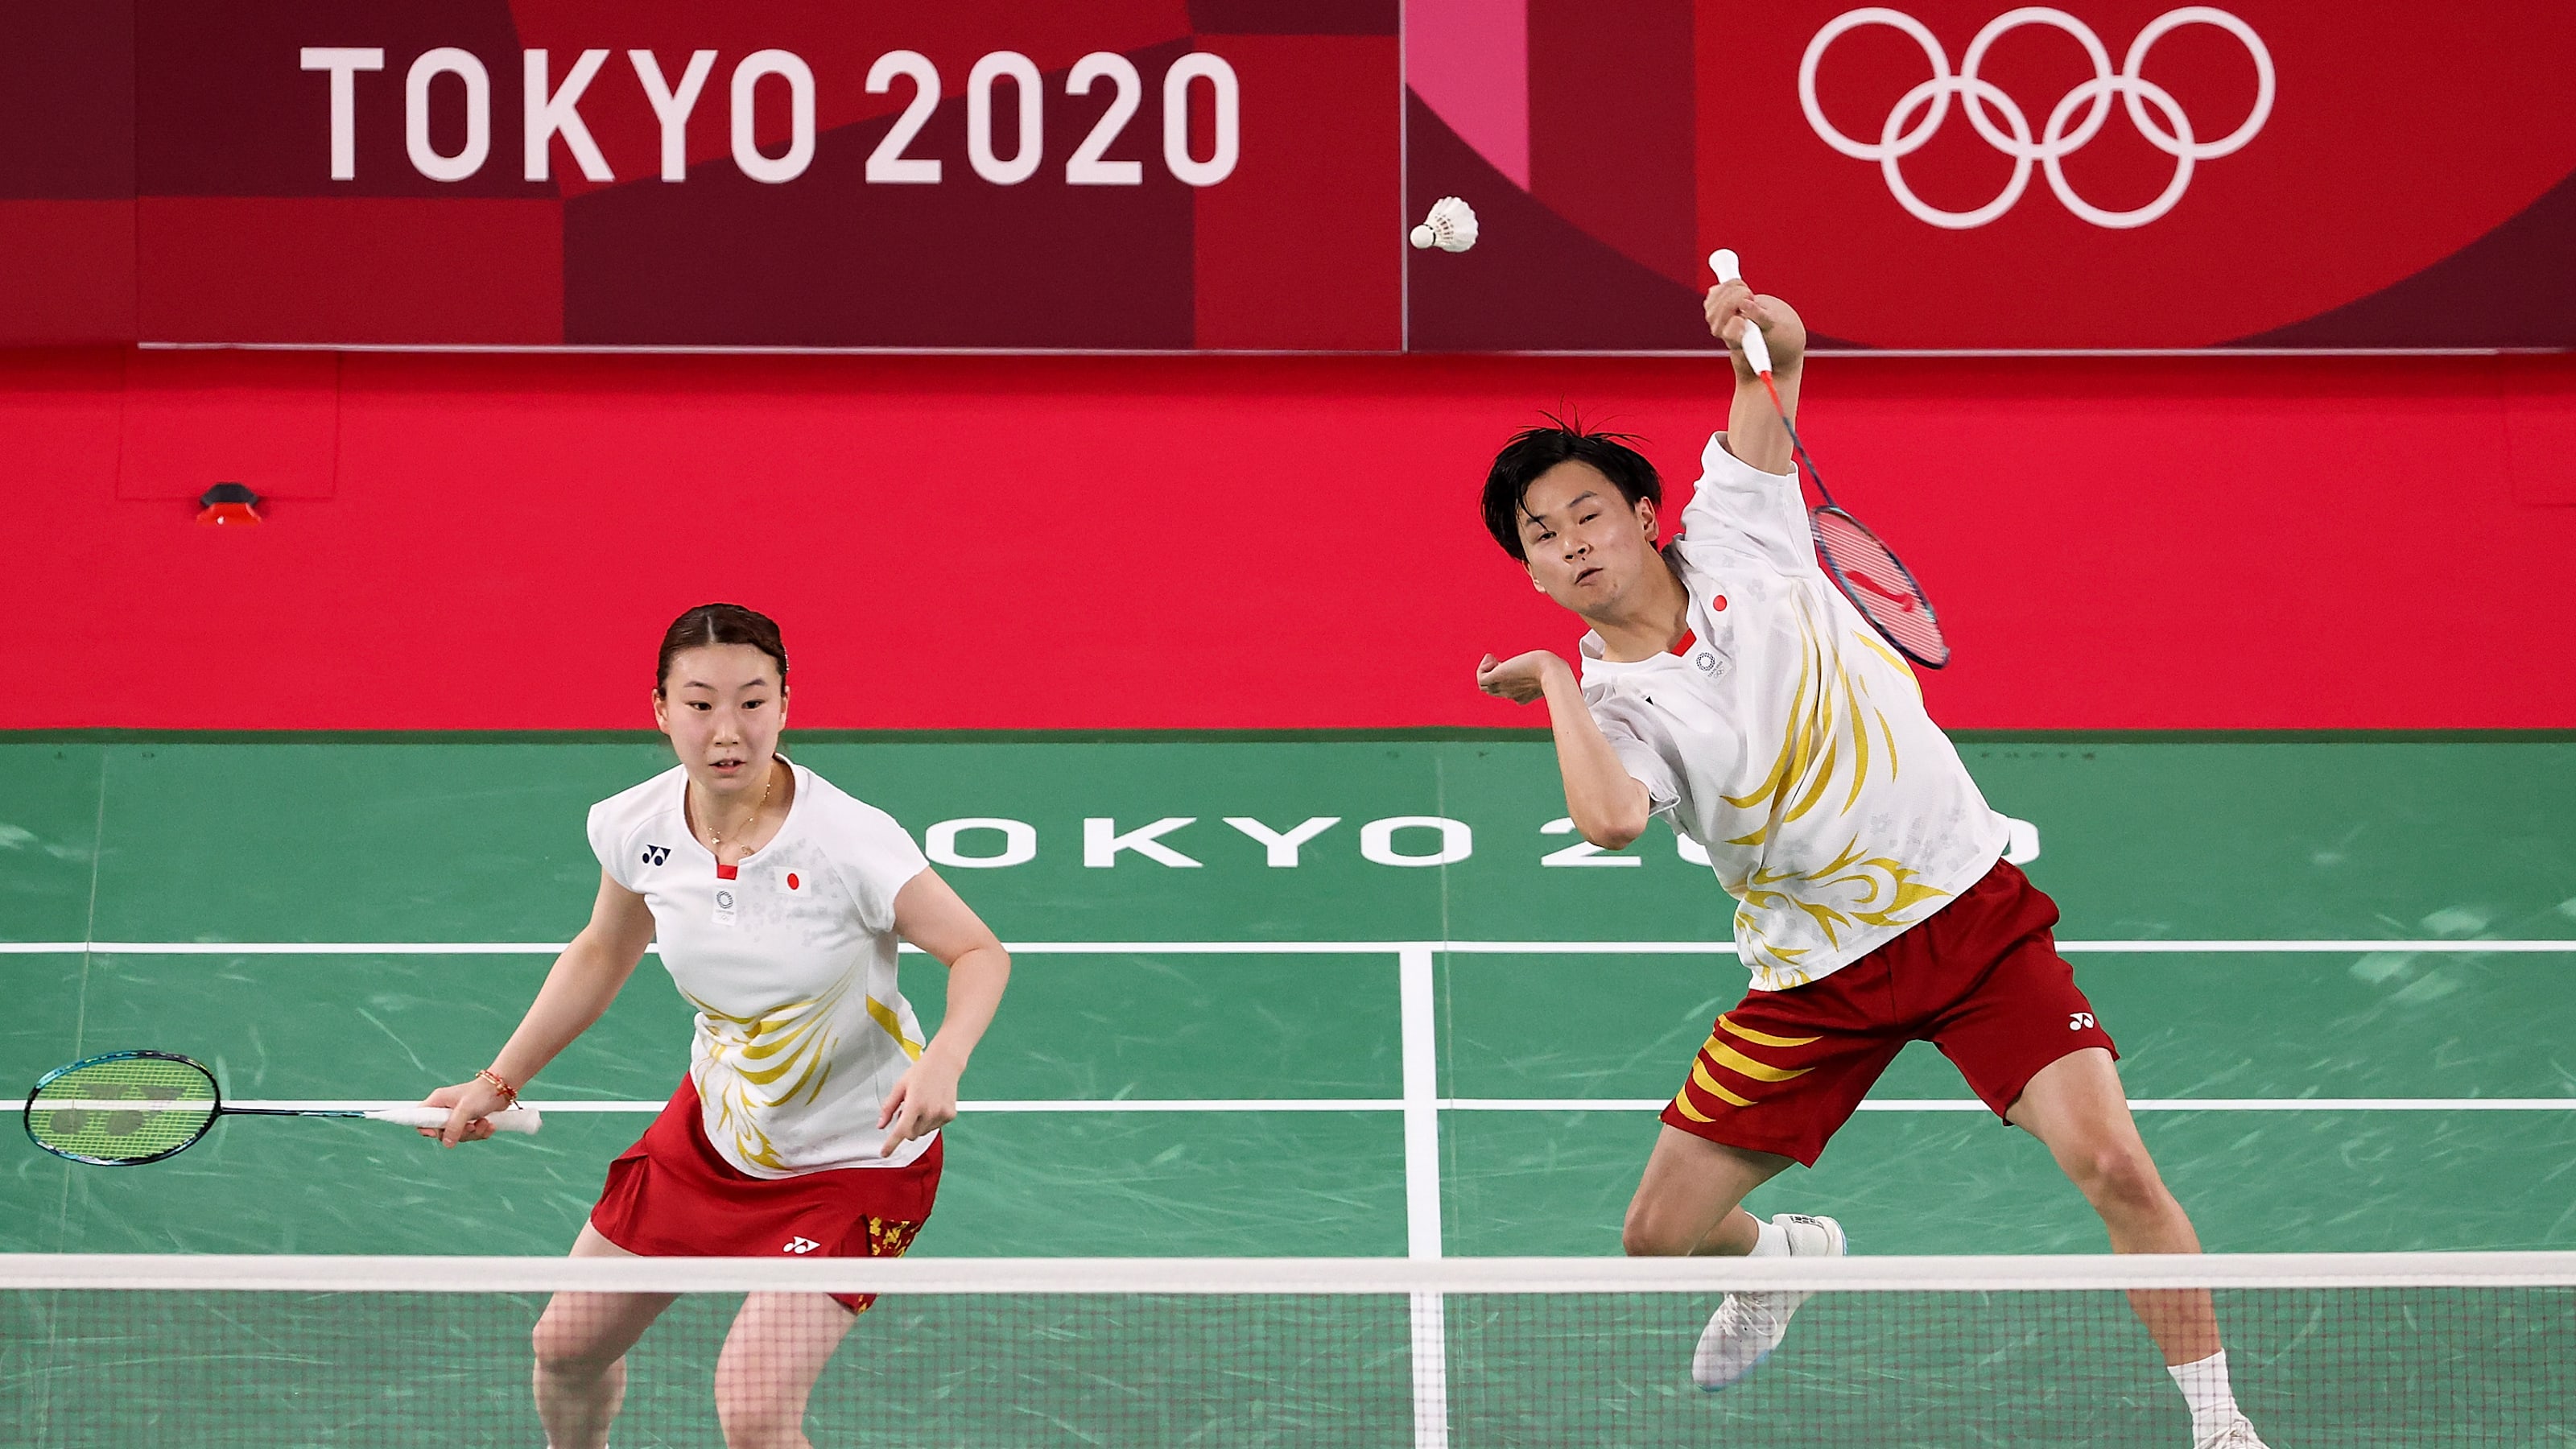 7月30日 東京五輪 バドミントンの放送予定 渡辺勇大 東野有紗ペアは銅メダル獲得なるか